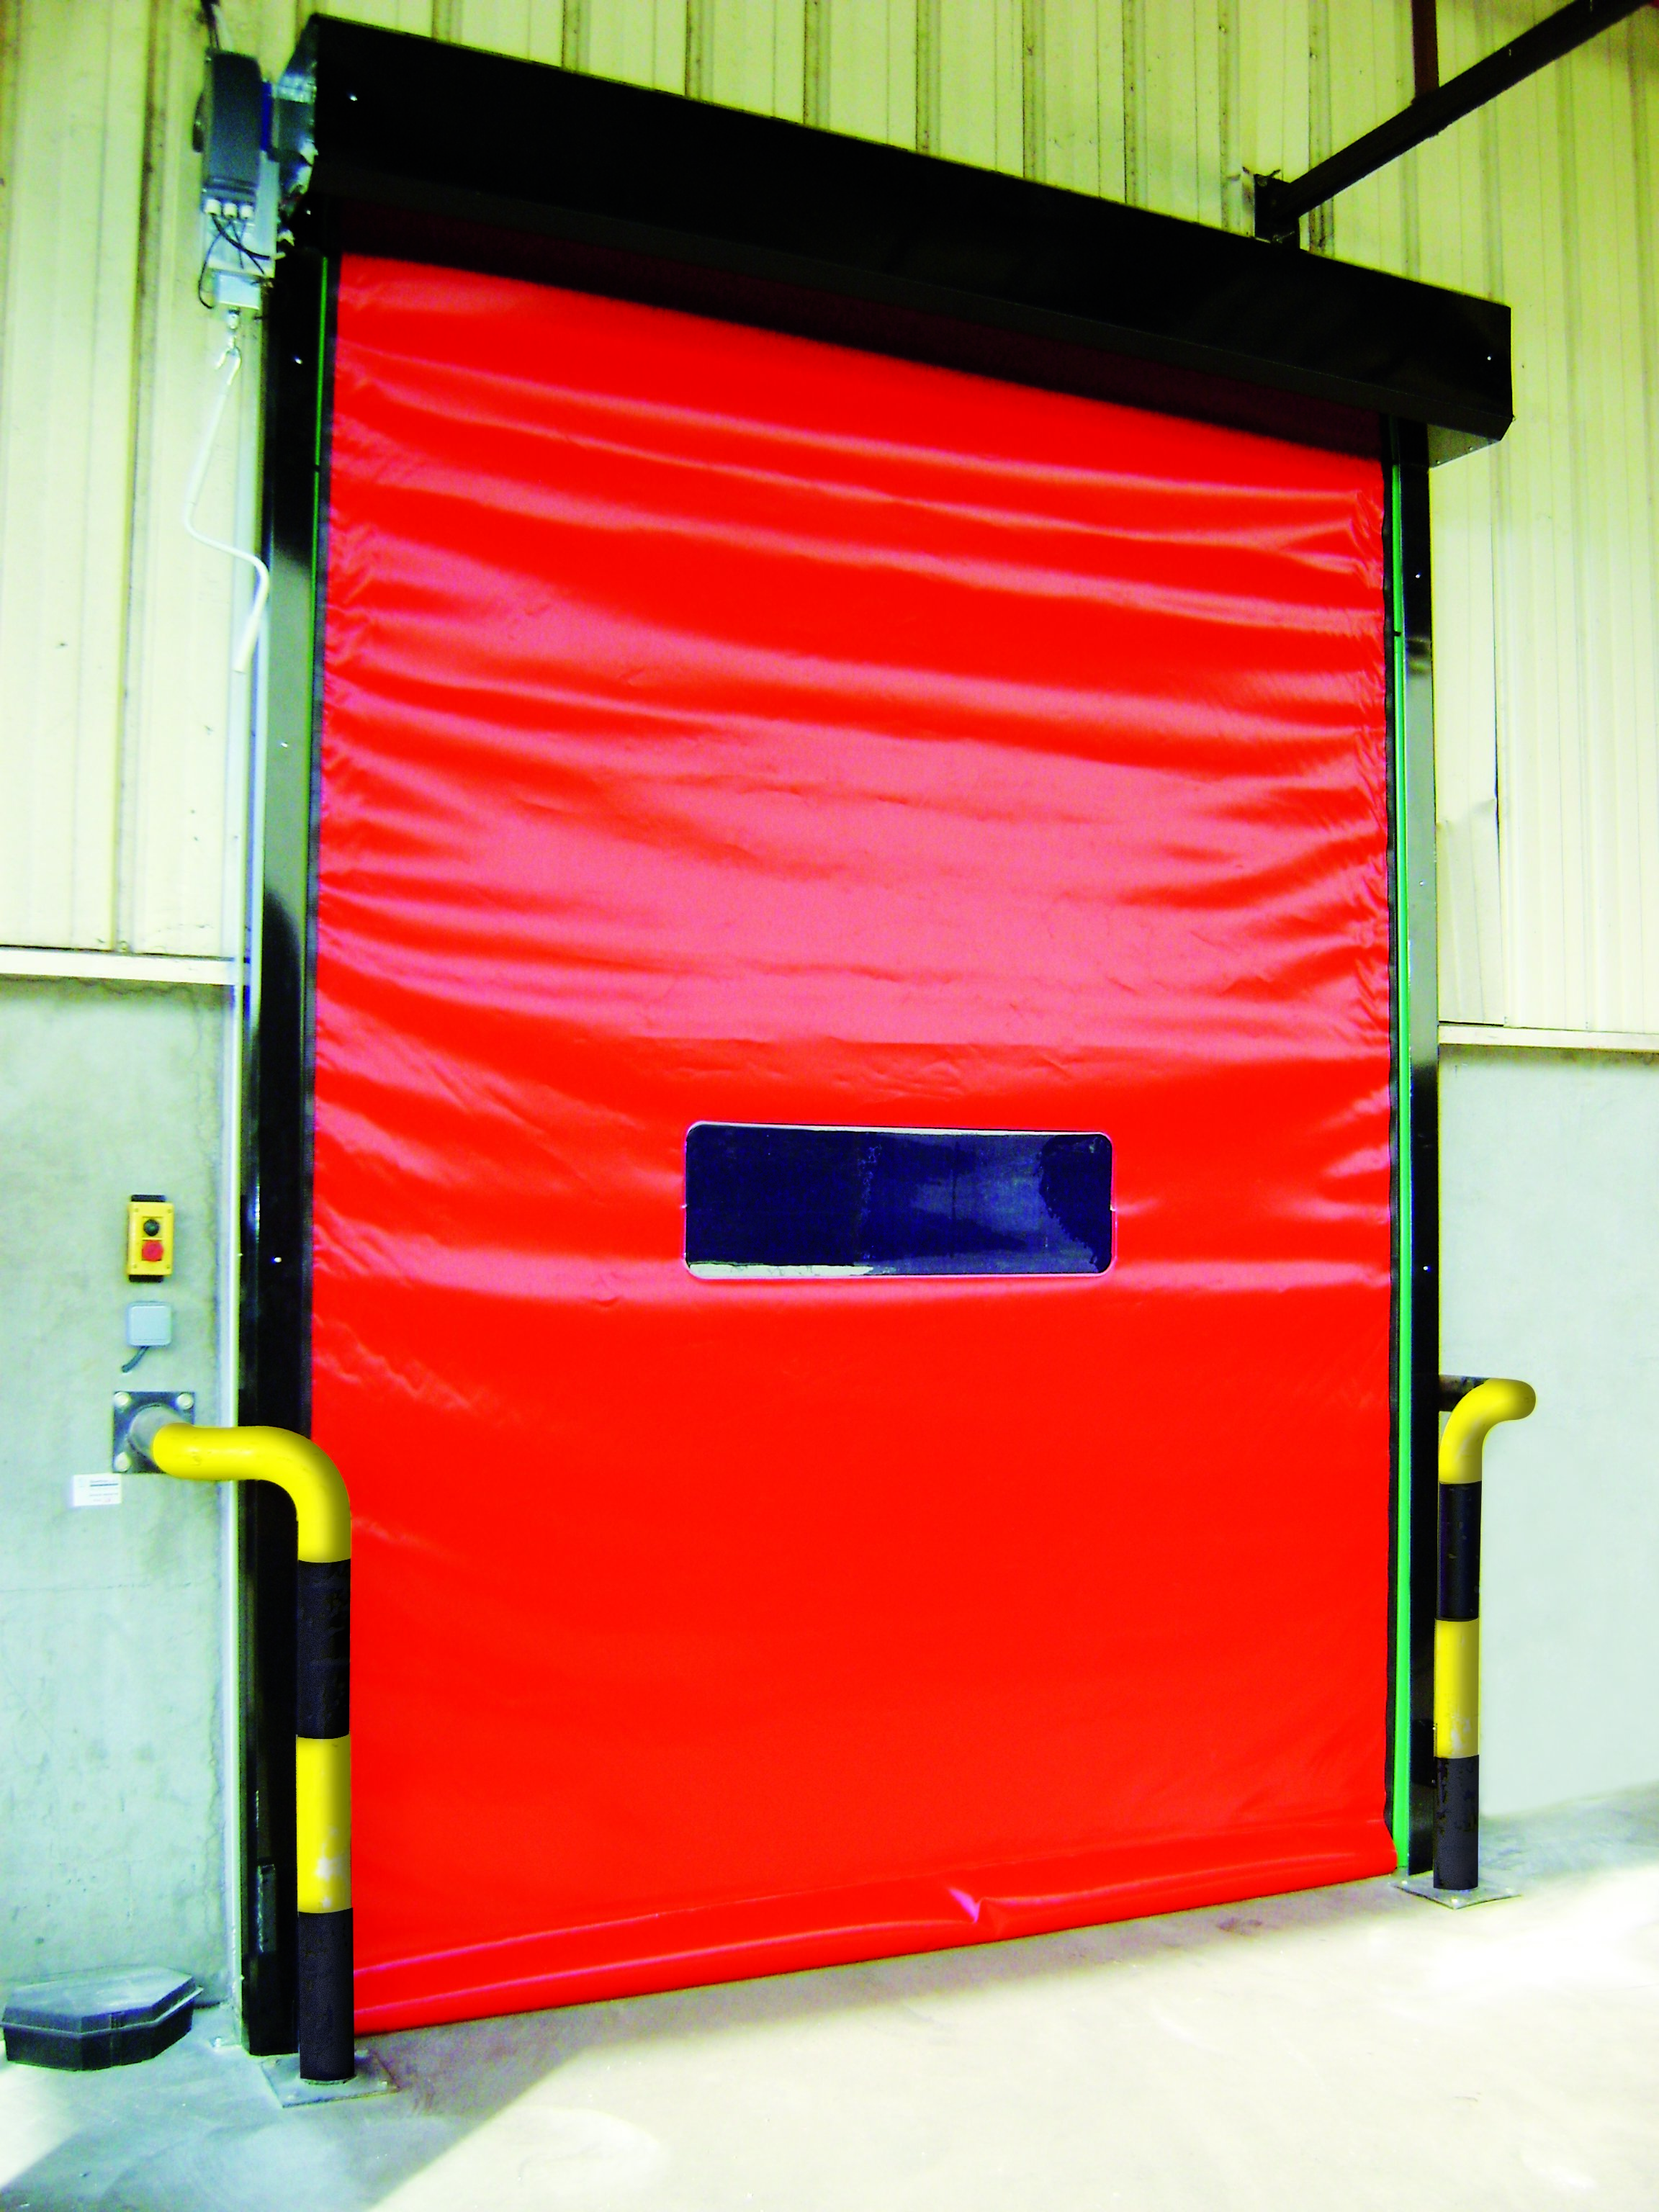 Czerwona brama samonaprawialna WinSelf umożliwiająca wyjazd na zewnątrz obiektu.